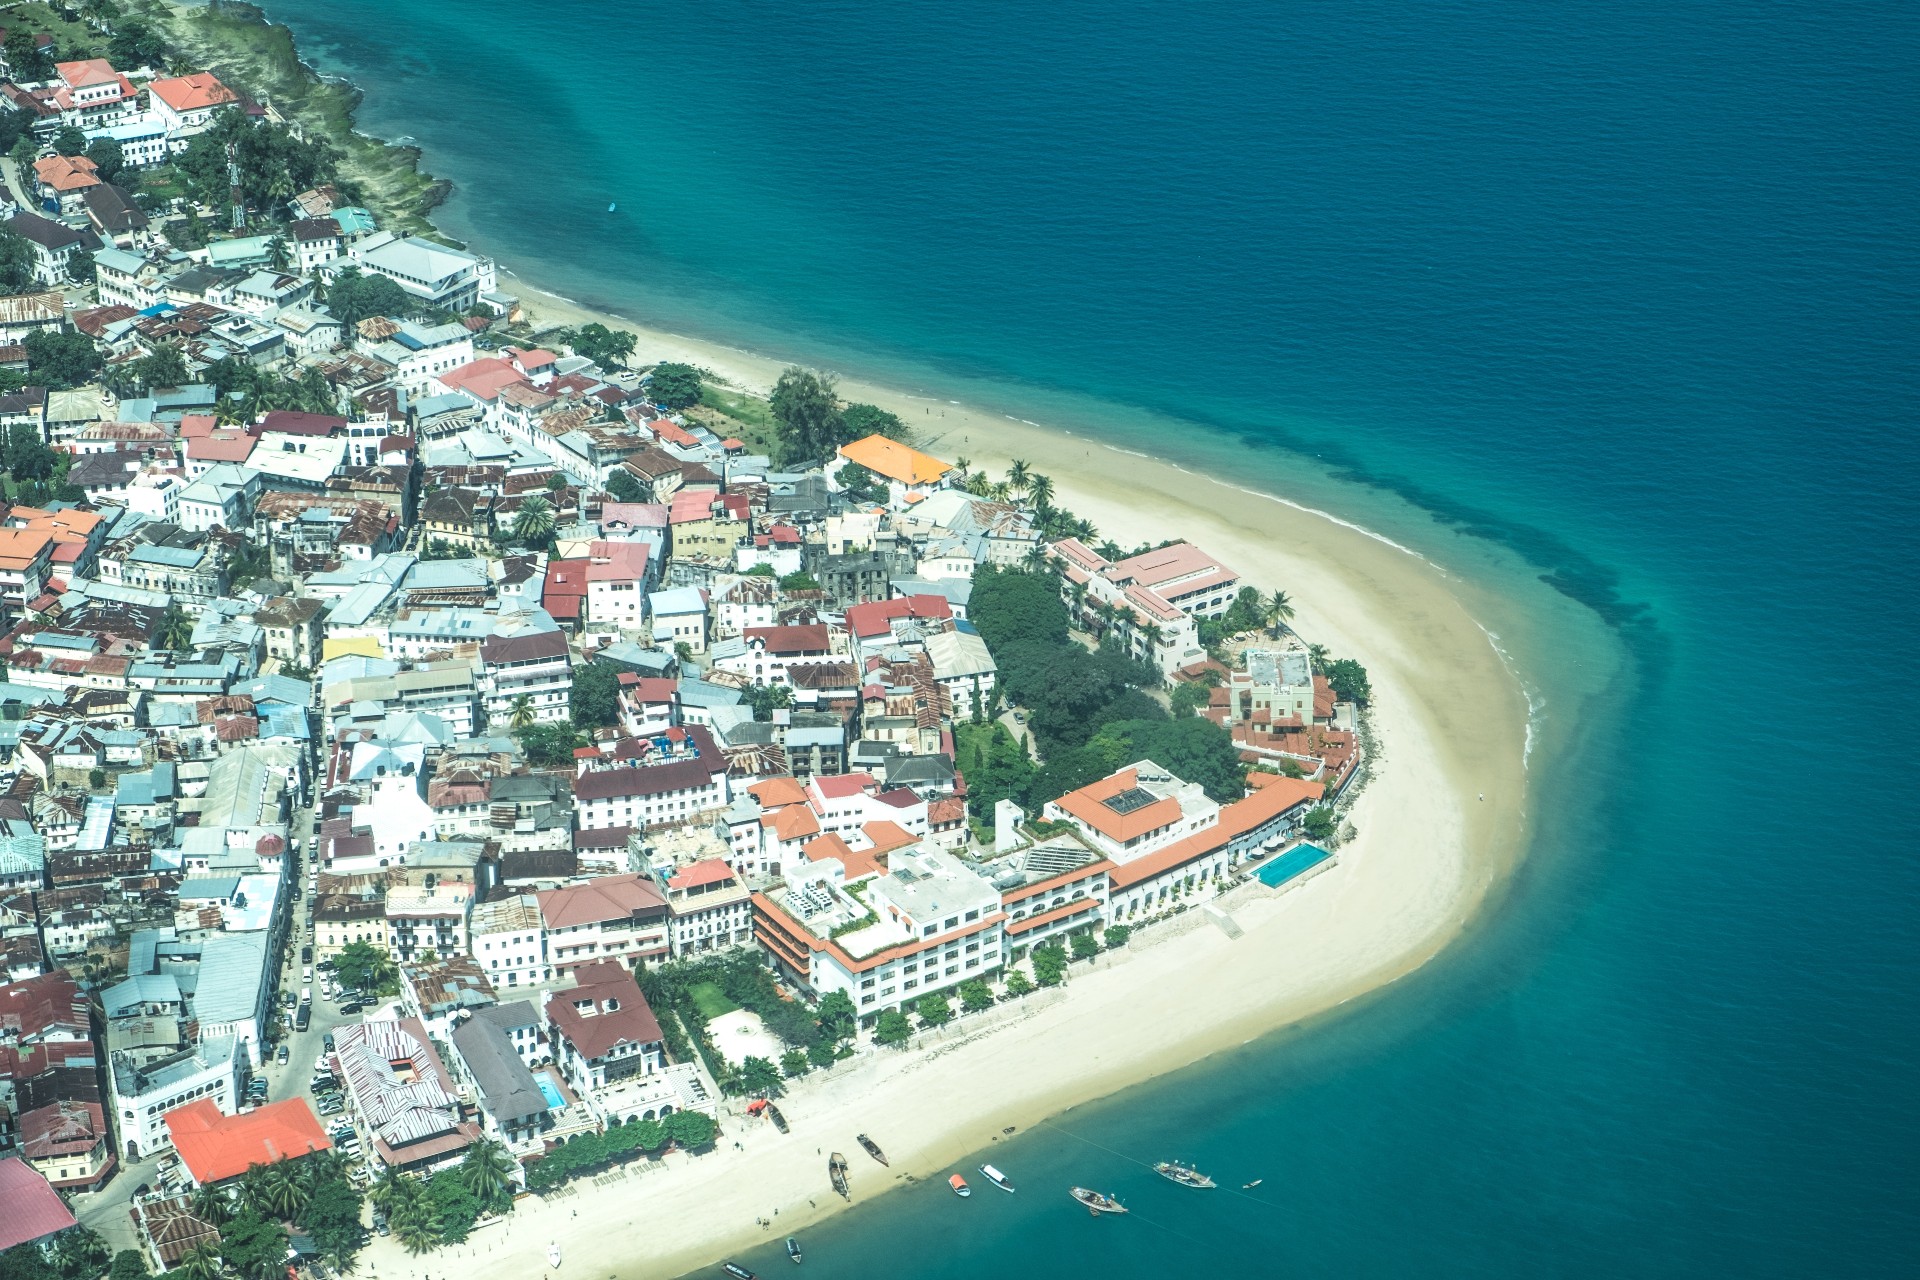 An aerial view of Stone town, Zanzibar 